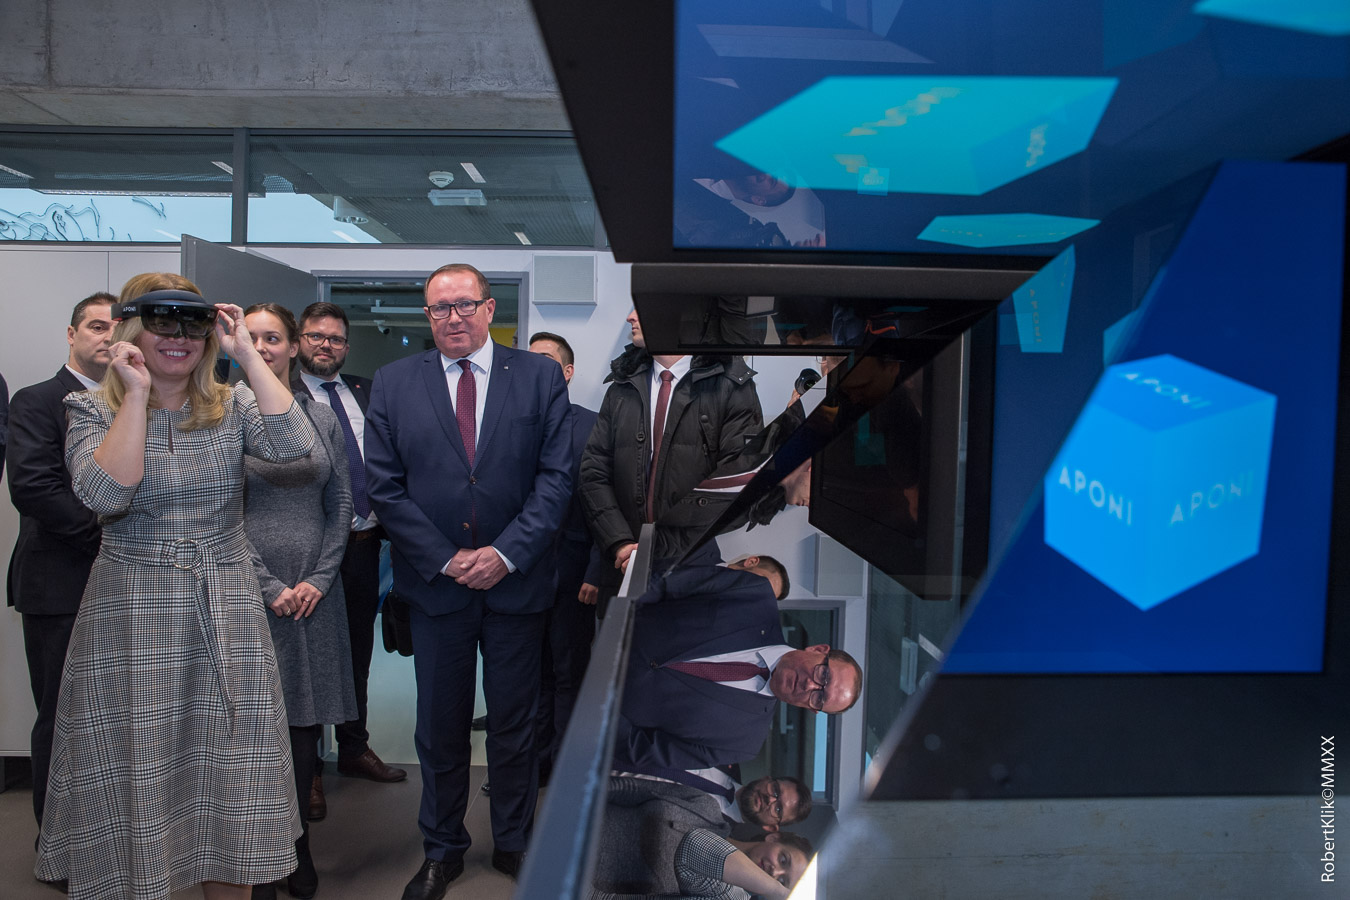 President of the Slovak Republic visited TUKE